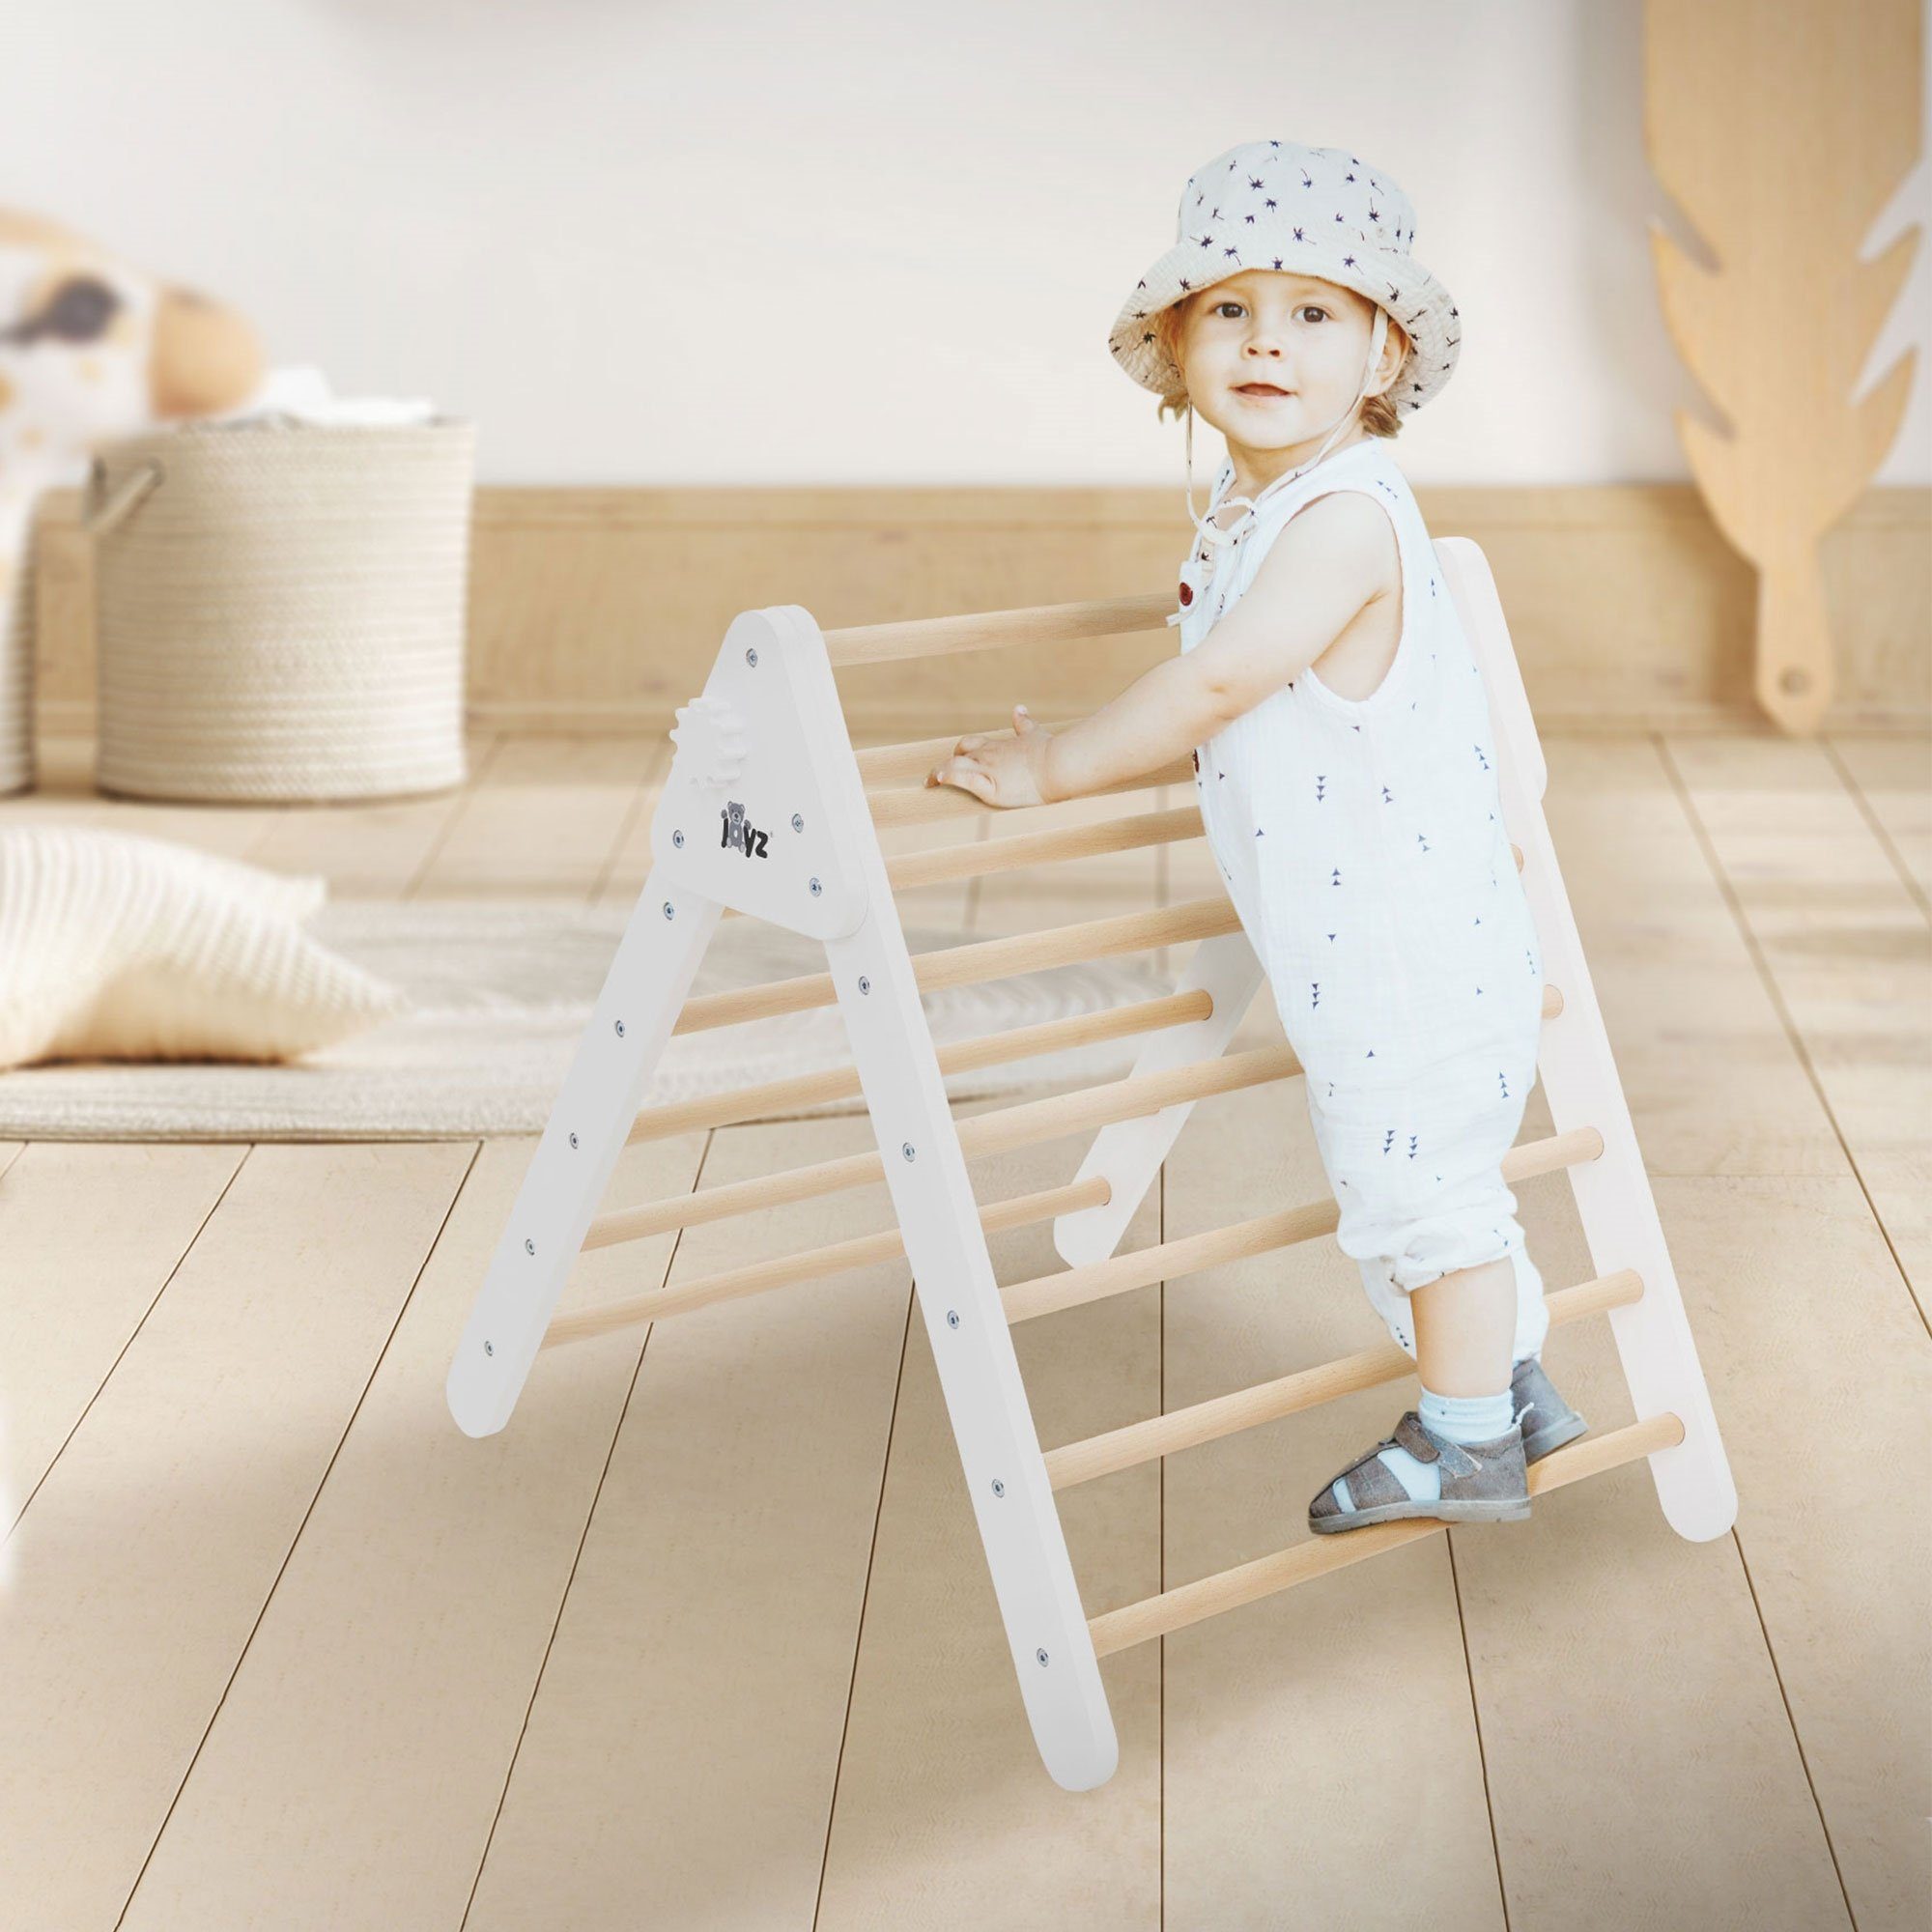 Joyz Klettergerüst Kletterleiter Spielzeug aus holz für Babies und Kleinkinder ab 1 Jahr, Montessori Kletterdreieck für Kinder Natur/Weiß Klappbar 73x72x70cm